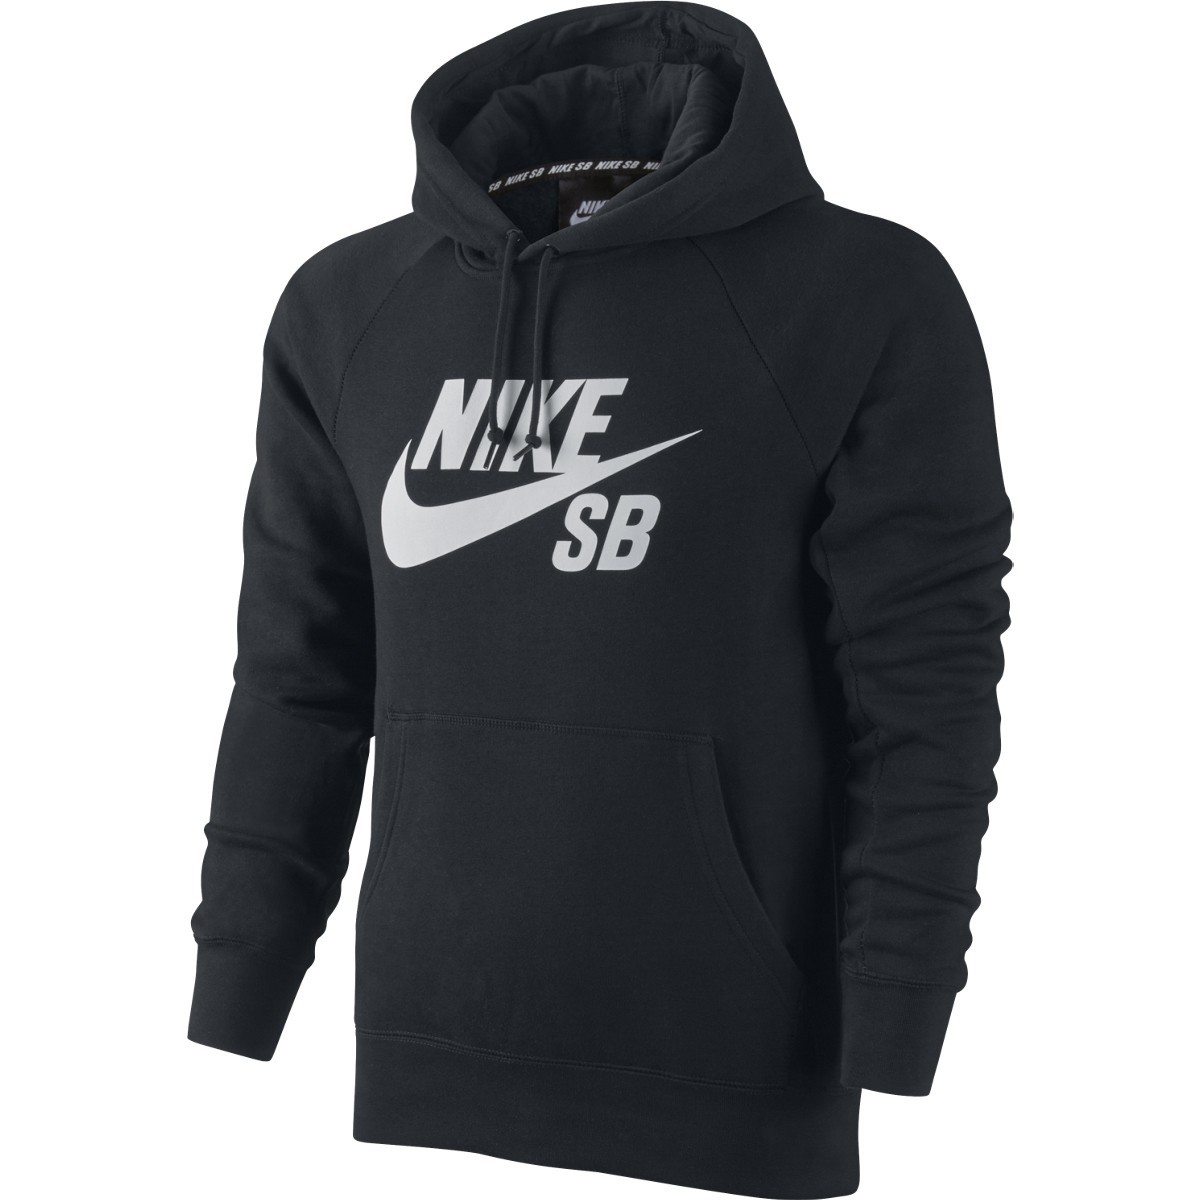 Nike SB Icon Pullover Fleece SS15 